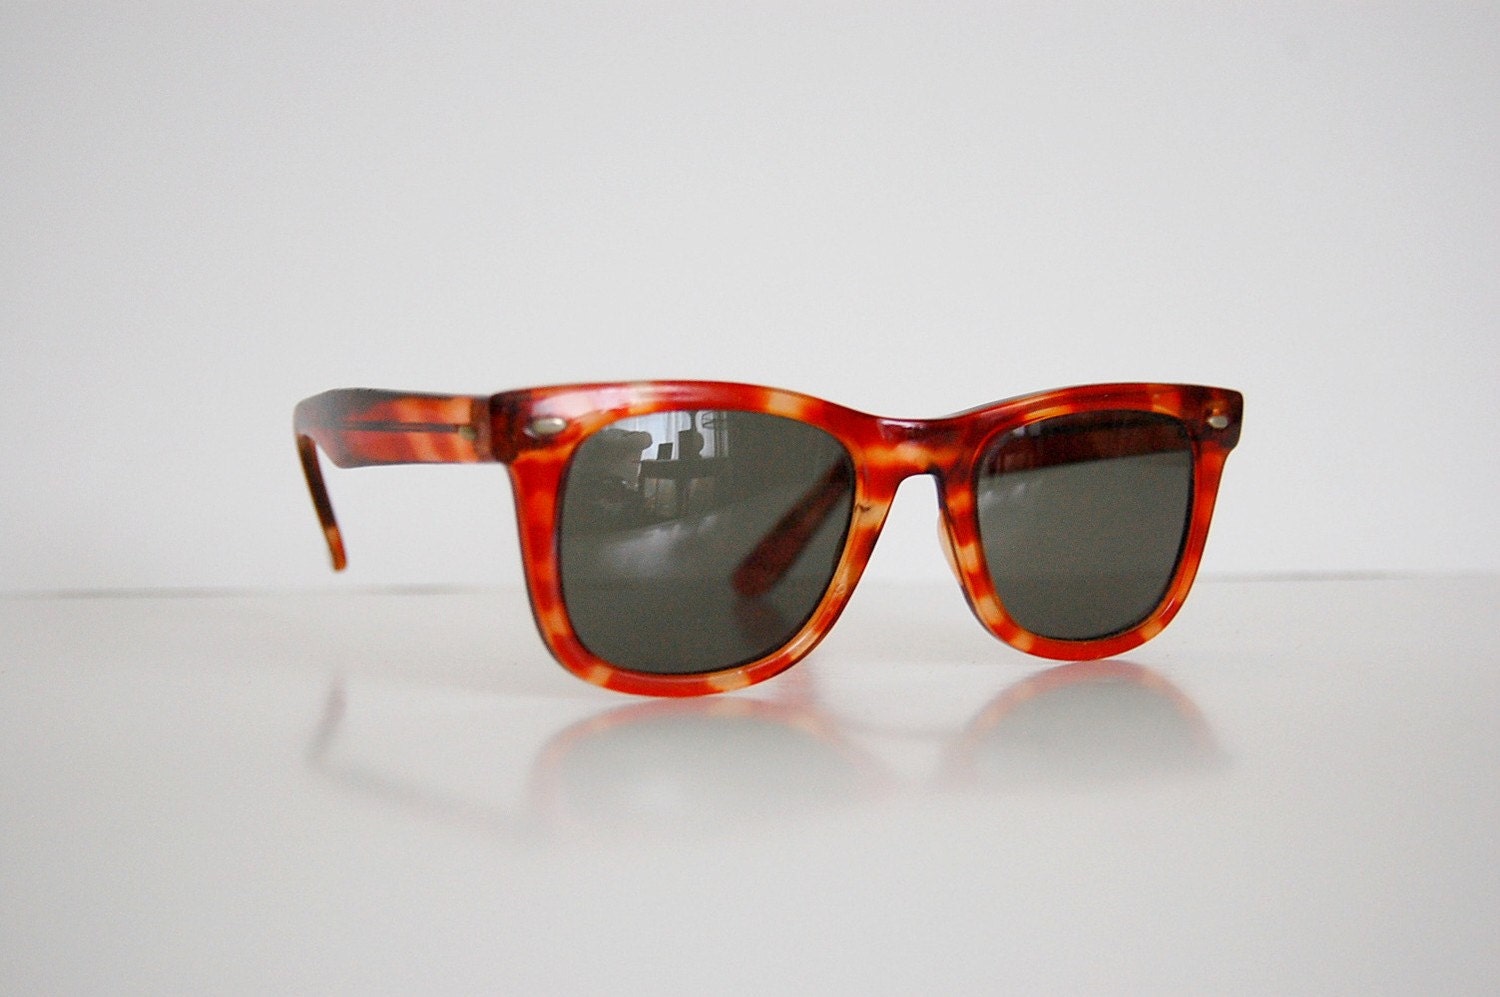 Vintage 1970s Tortoise-shell WAYFARER Sunglasses